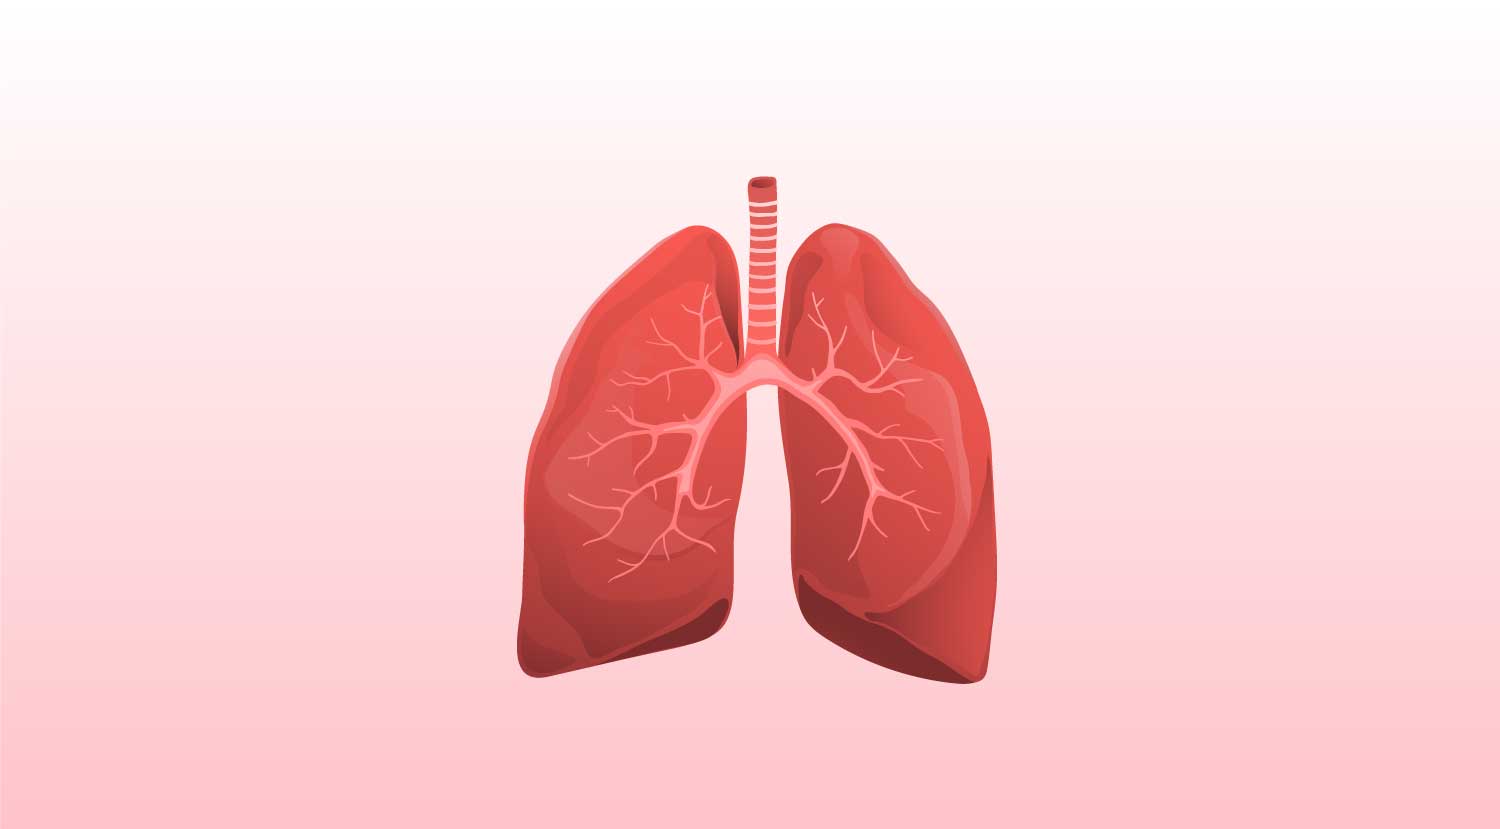 COPD und Asthma sind chronische Atemwegserkrankungen, die in Deutschland weit verbreitet sind. Trotz ähnlicher Symptome handelt es sich jedoch um zwei eigenständige Krankheitsbilder, die eine unterschiedliche Behandlung fordern. Im Rahmen der Disease Management Programme erhalten Betroffene individuelle Therapiekonzepte.